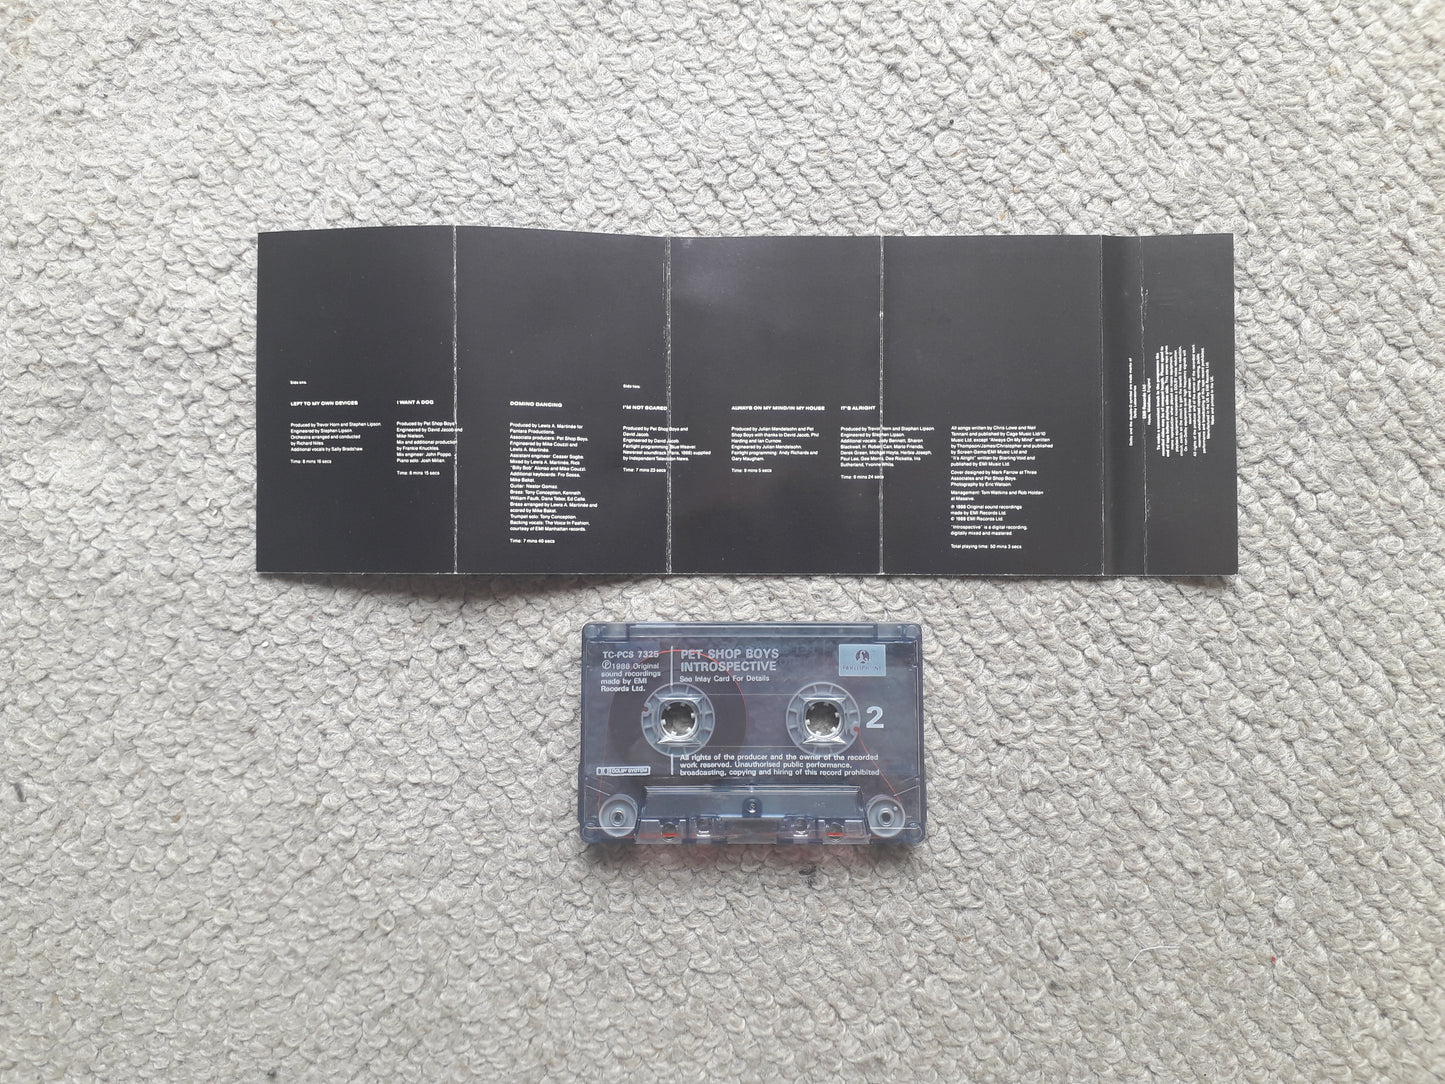 Pet Shop Boys-Introspective Cassette Tape (TCPS 7325)